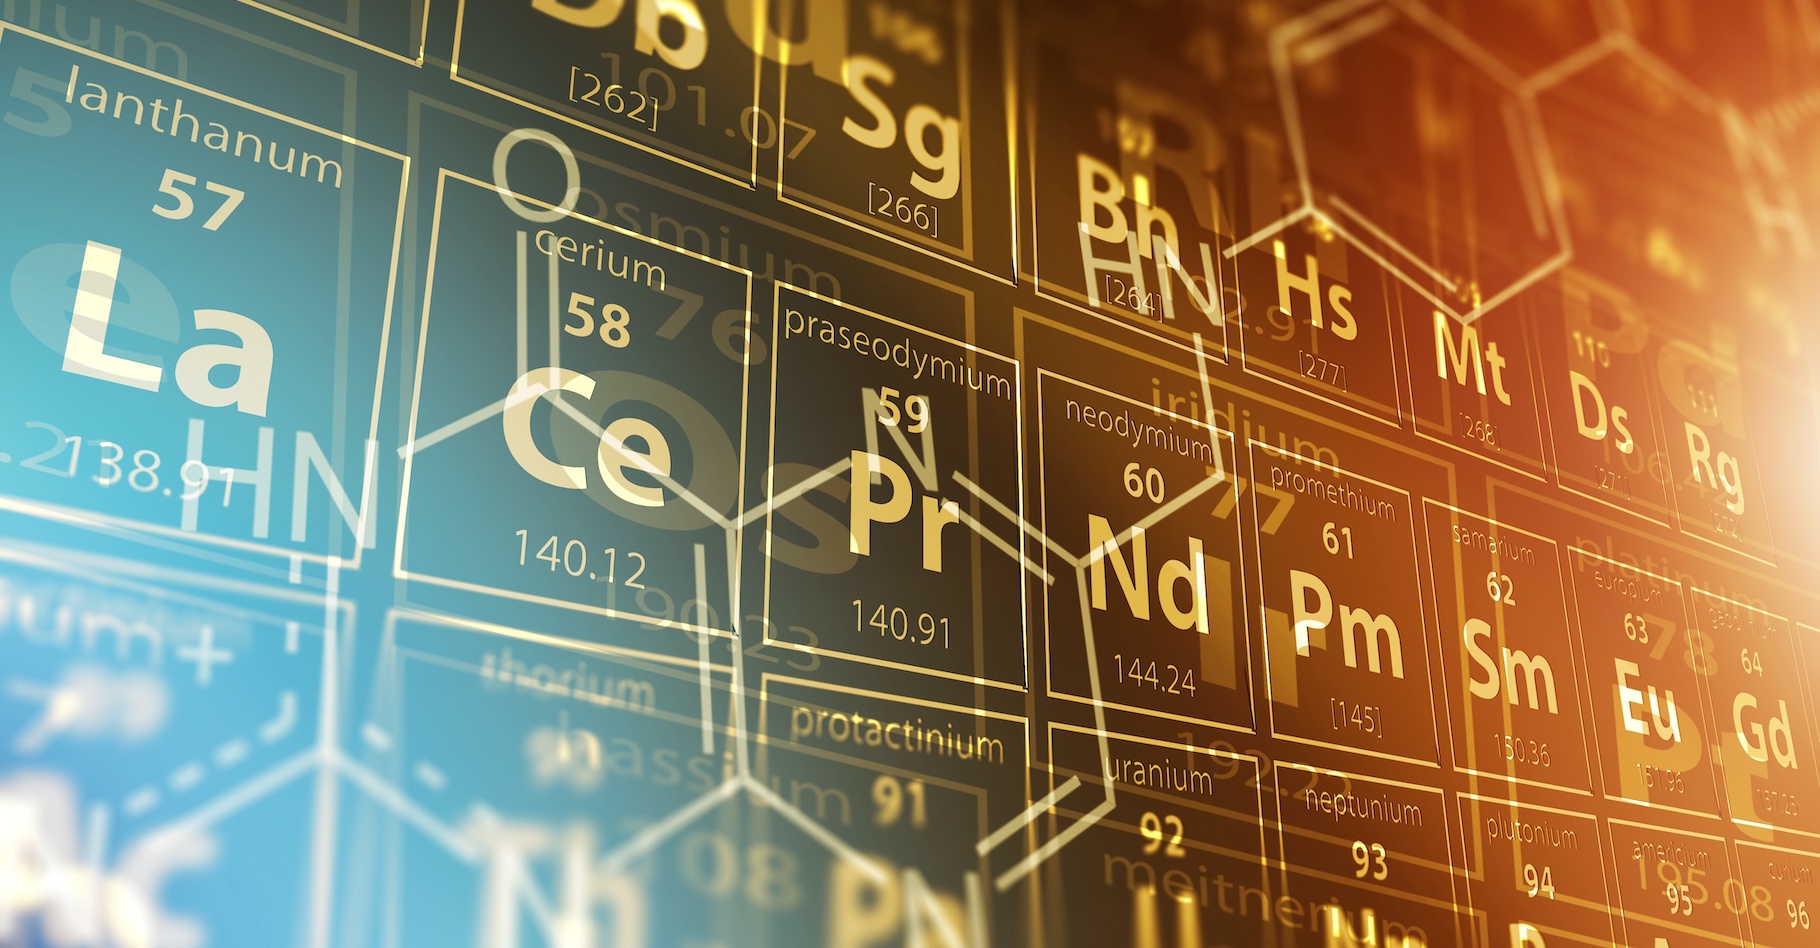 Des chimistes russes proposent une version revisitée du tableau périodique des éléments de Mendeleev. Une version qu’ils veulent plus utile aux sciences des matériaux. © Tomasz Zajda, Adobe Stock